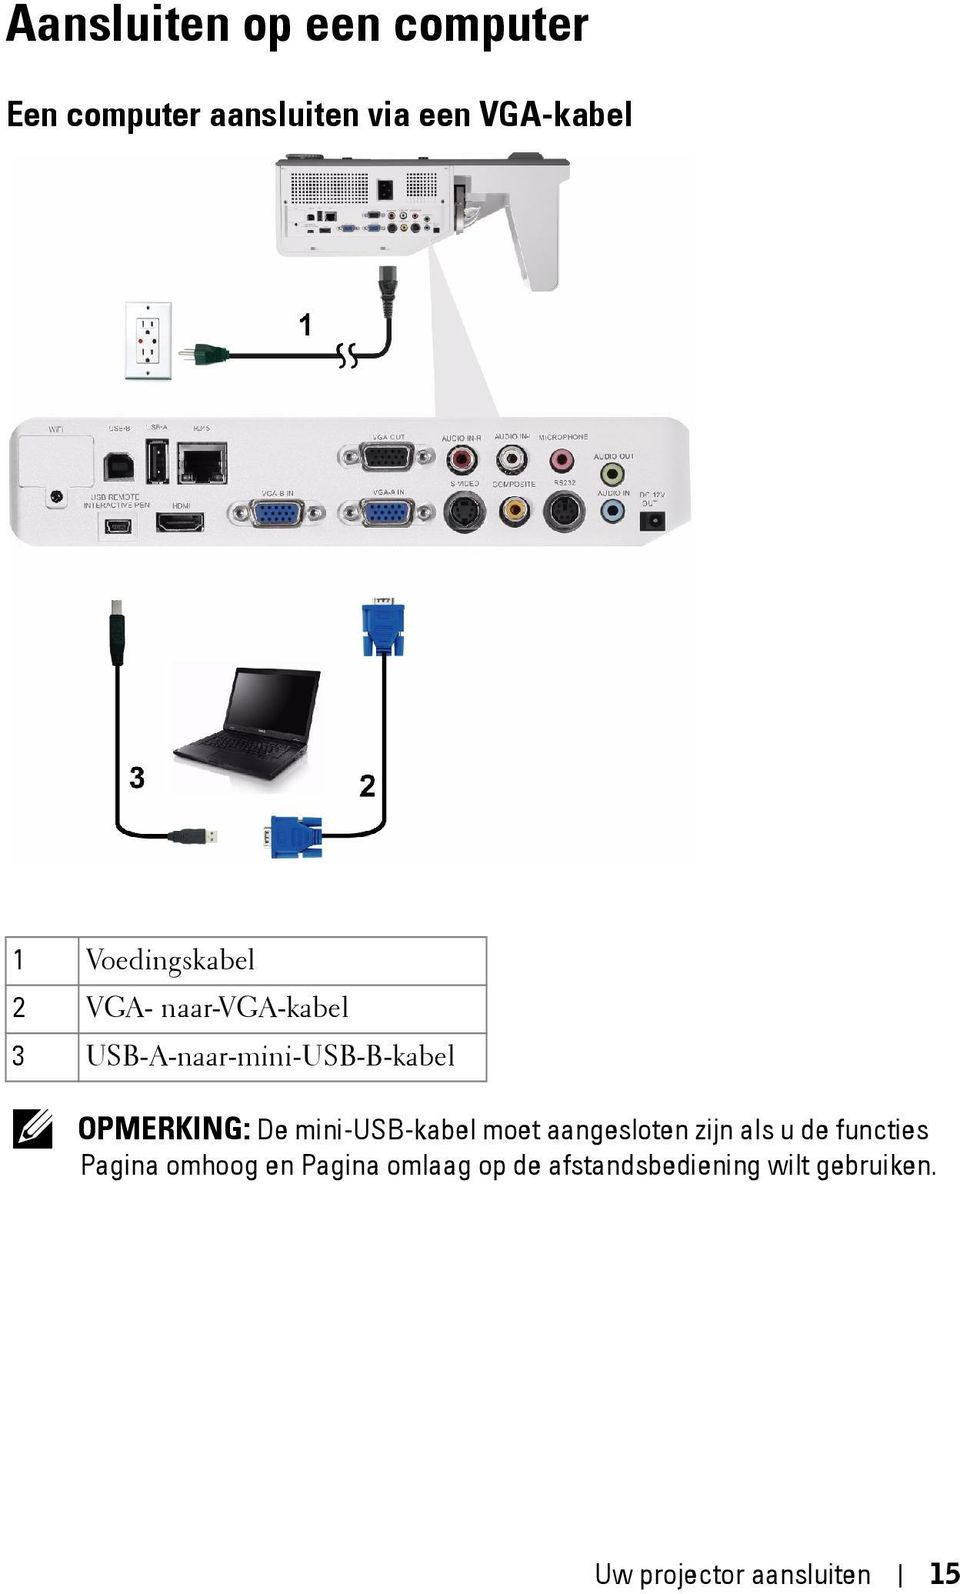 OPMERKING: De mini-usb-kabel moet aangesloten zijn als u de functies Pagina